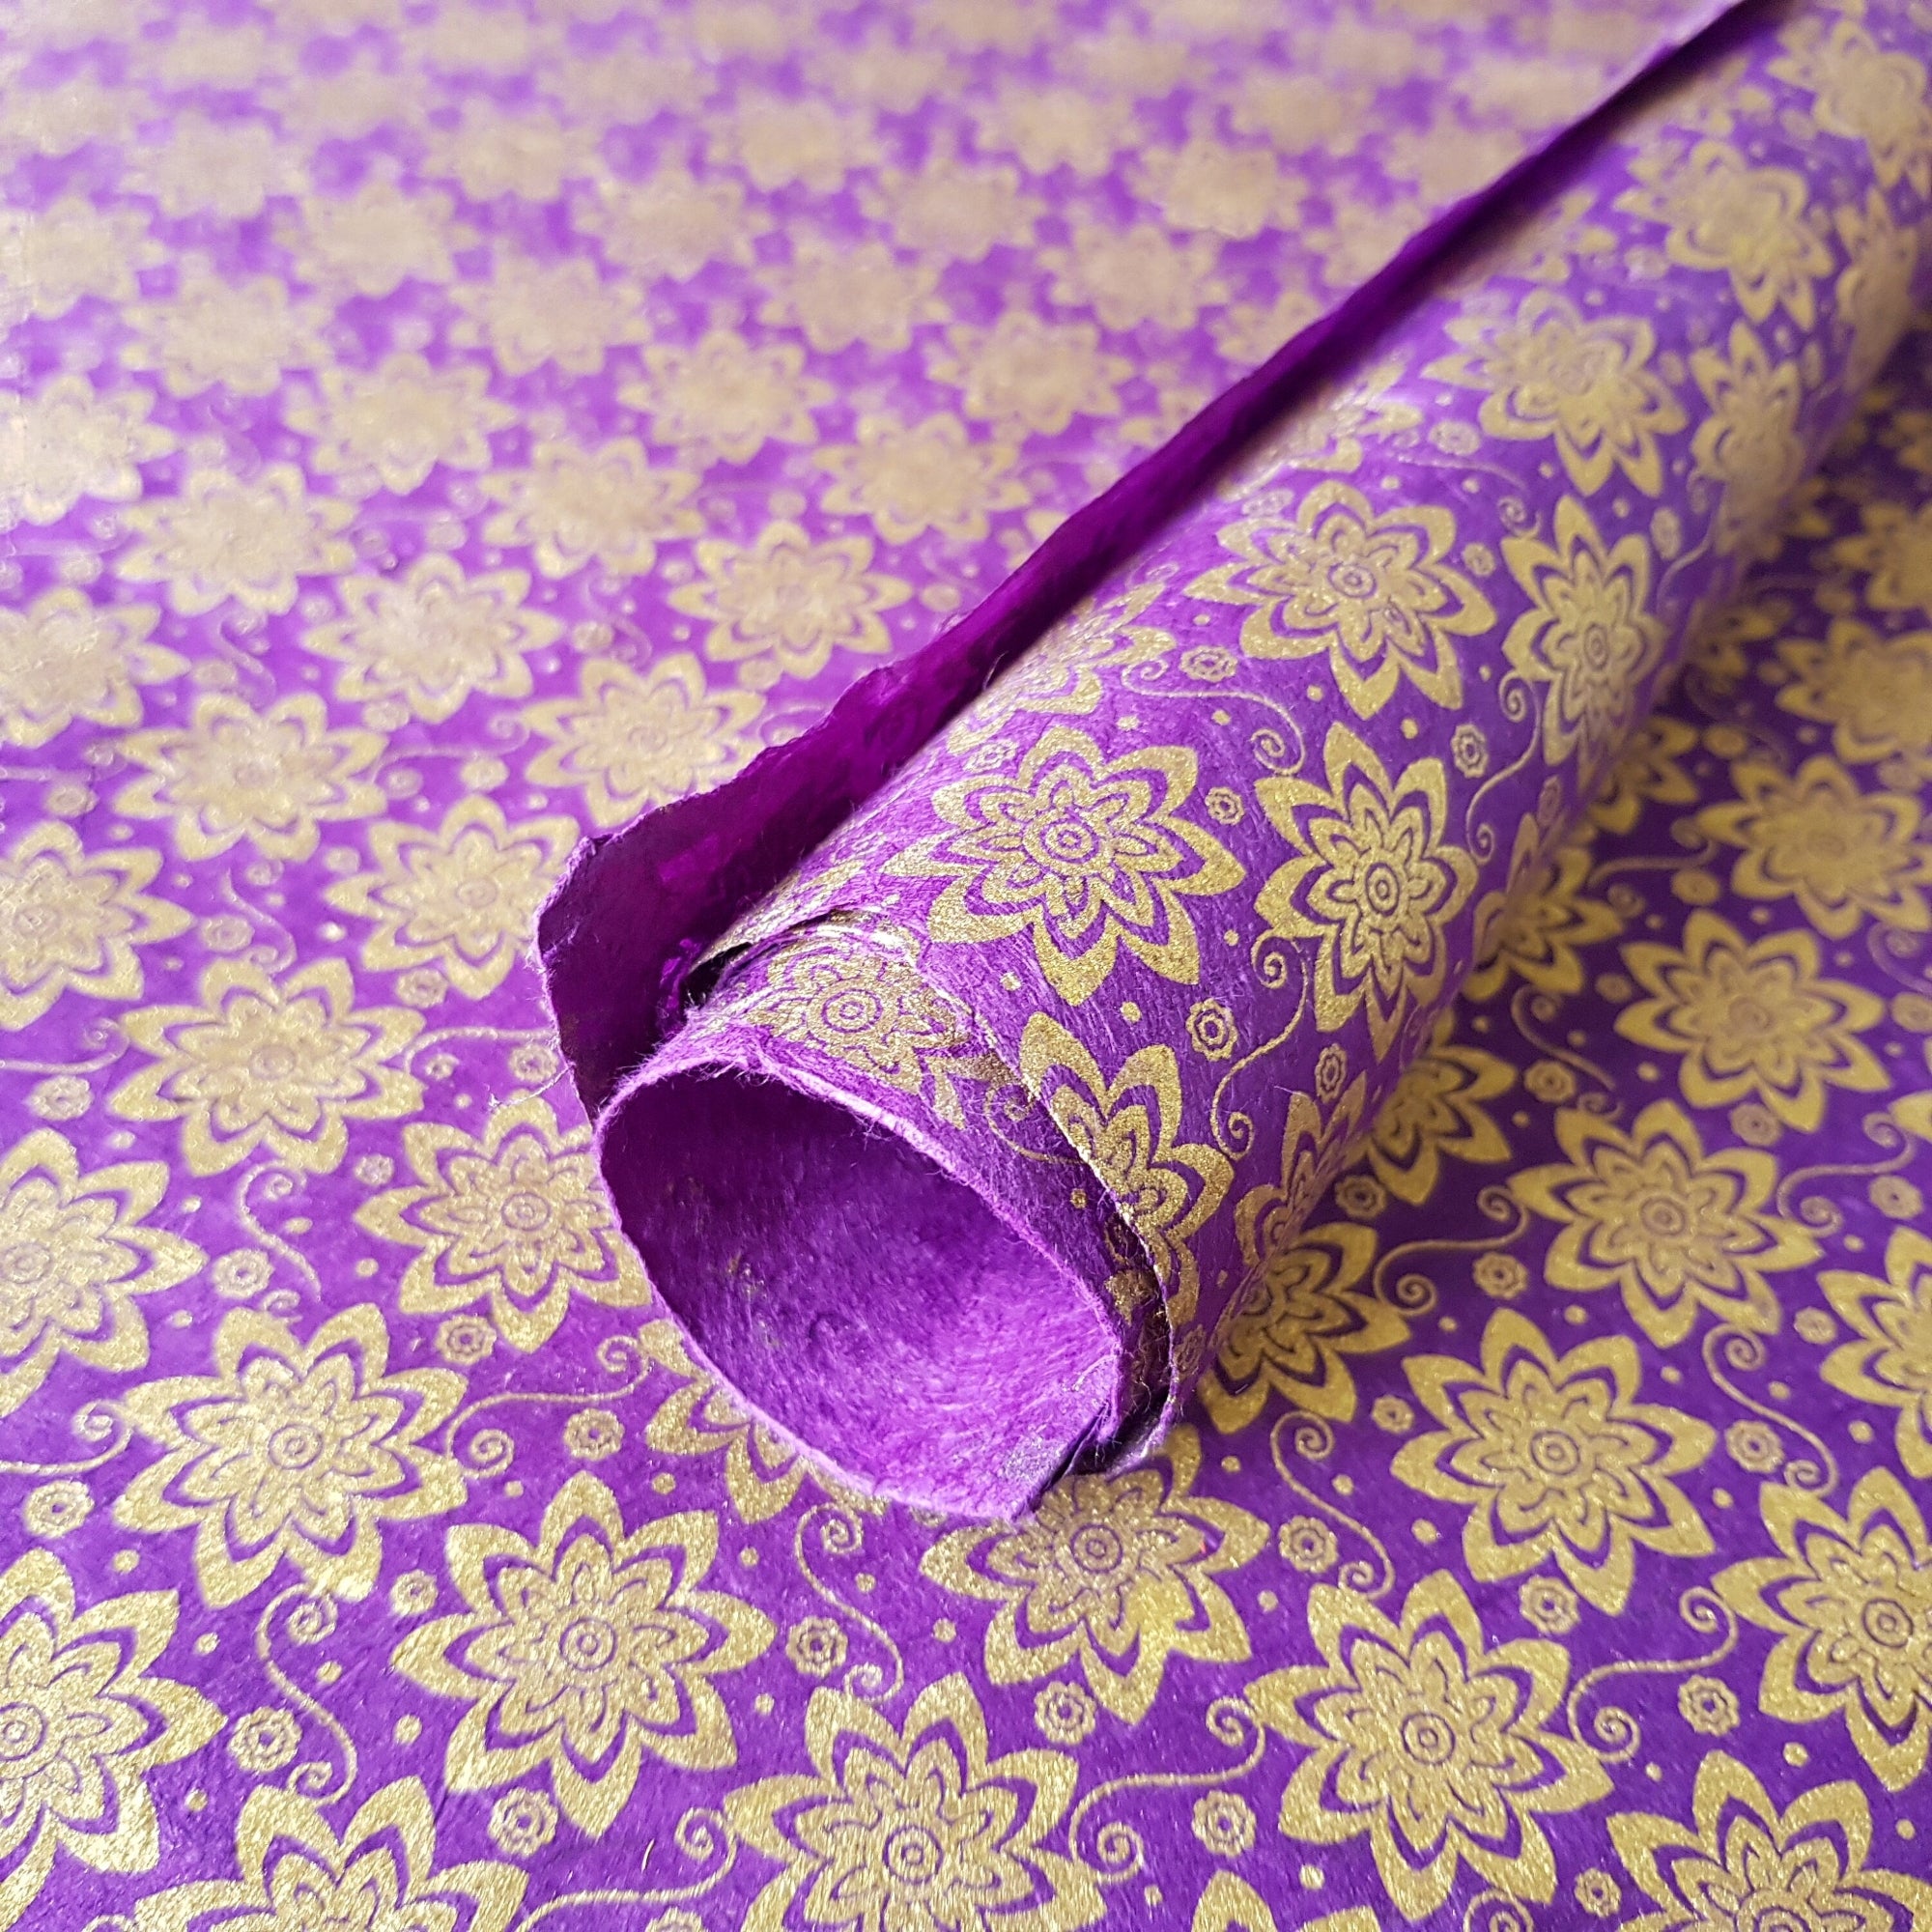 Purple Metallic Gold Floral Print on Lokta Paper, Tree Free & Sustainable